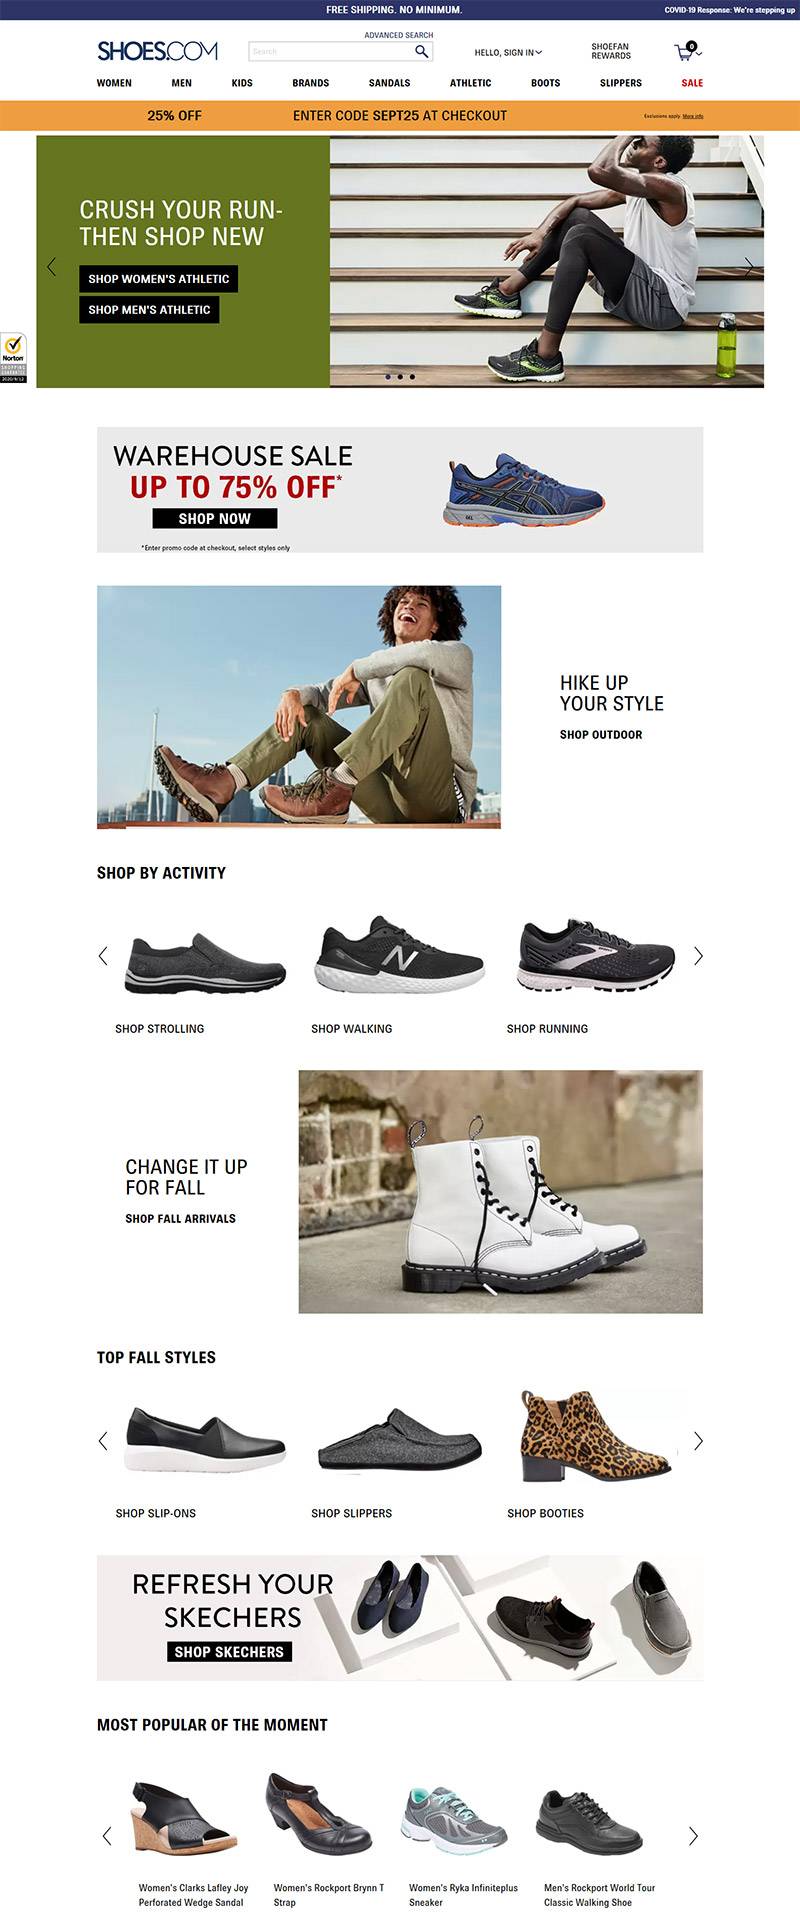 Shoes.com 美国顶级鞋包配饰海淘网站